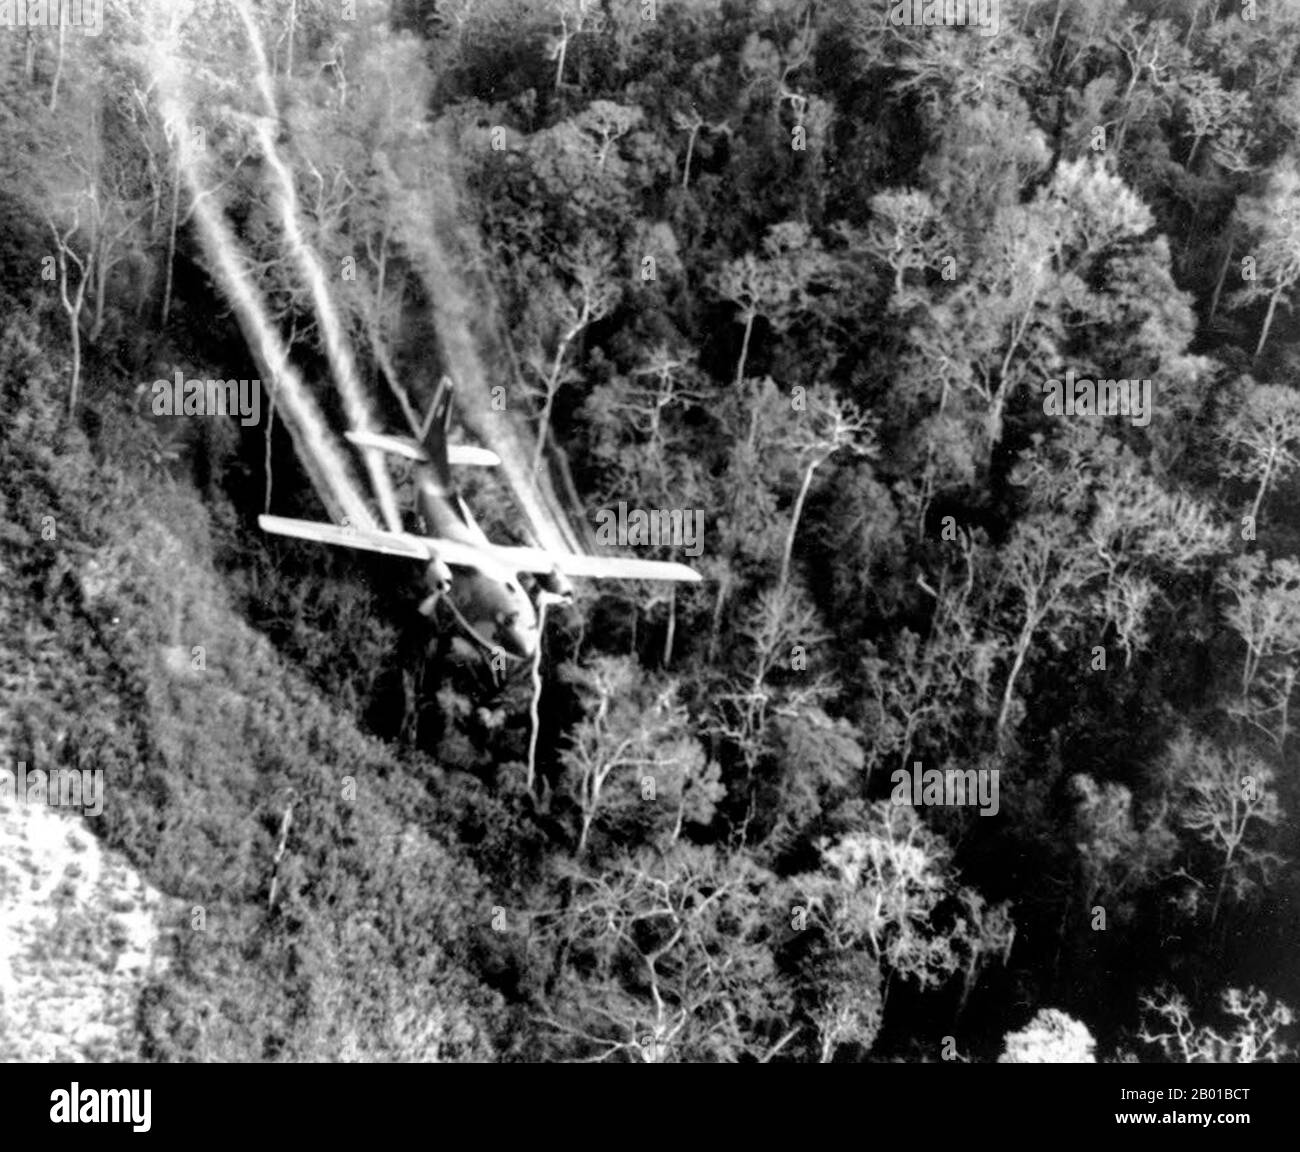 Vietnam: Eine US-Luftwaffe C-123 fliegt tief entlang einer südvietnamesischen Autobahn, während sie während des Vietnamkrieges im Mai 1966 Entlaubungsmittel auf das dichte Dschungelwachstum sprüht, um Hinterhalt-Standorte für den NLF (Viet Cong) zu beseitigen. Der zweite Indochina-Krieg, in Amerika als Vietnamkrieg bekannt, war ein militärischer Konflikt aus der Zeit des Kalten Krieges, der sich in Vietnam, Laos und Kambodscha vom 1. November 1955 bis zum Fall Saigons am 30. April 1975 ereignete. Dieser Krieg folgte dem ersten Indochina-Krieg und wurde zwischen Nordvietnam, unterstützt von seinen kommunistischen Verbündeten, und der Regierung von Südvietnam, unterstützt von den USA, geführt Stockfoto